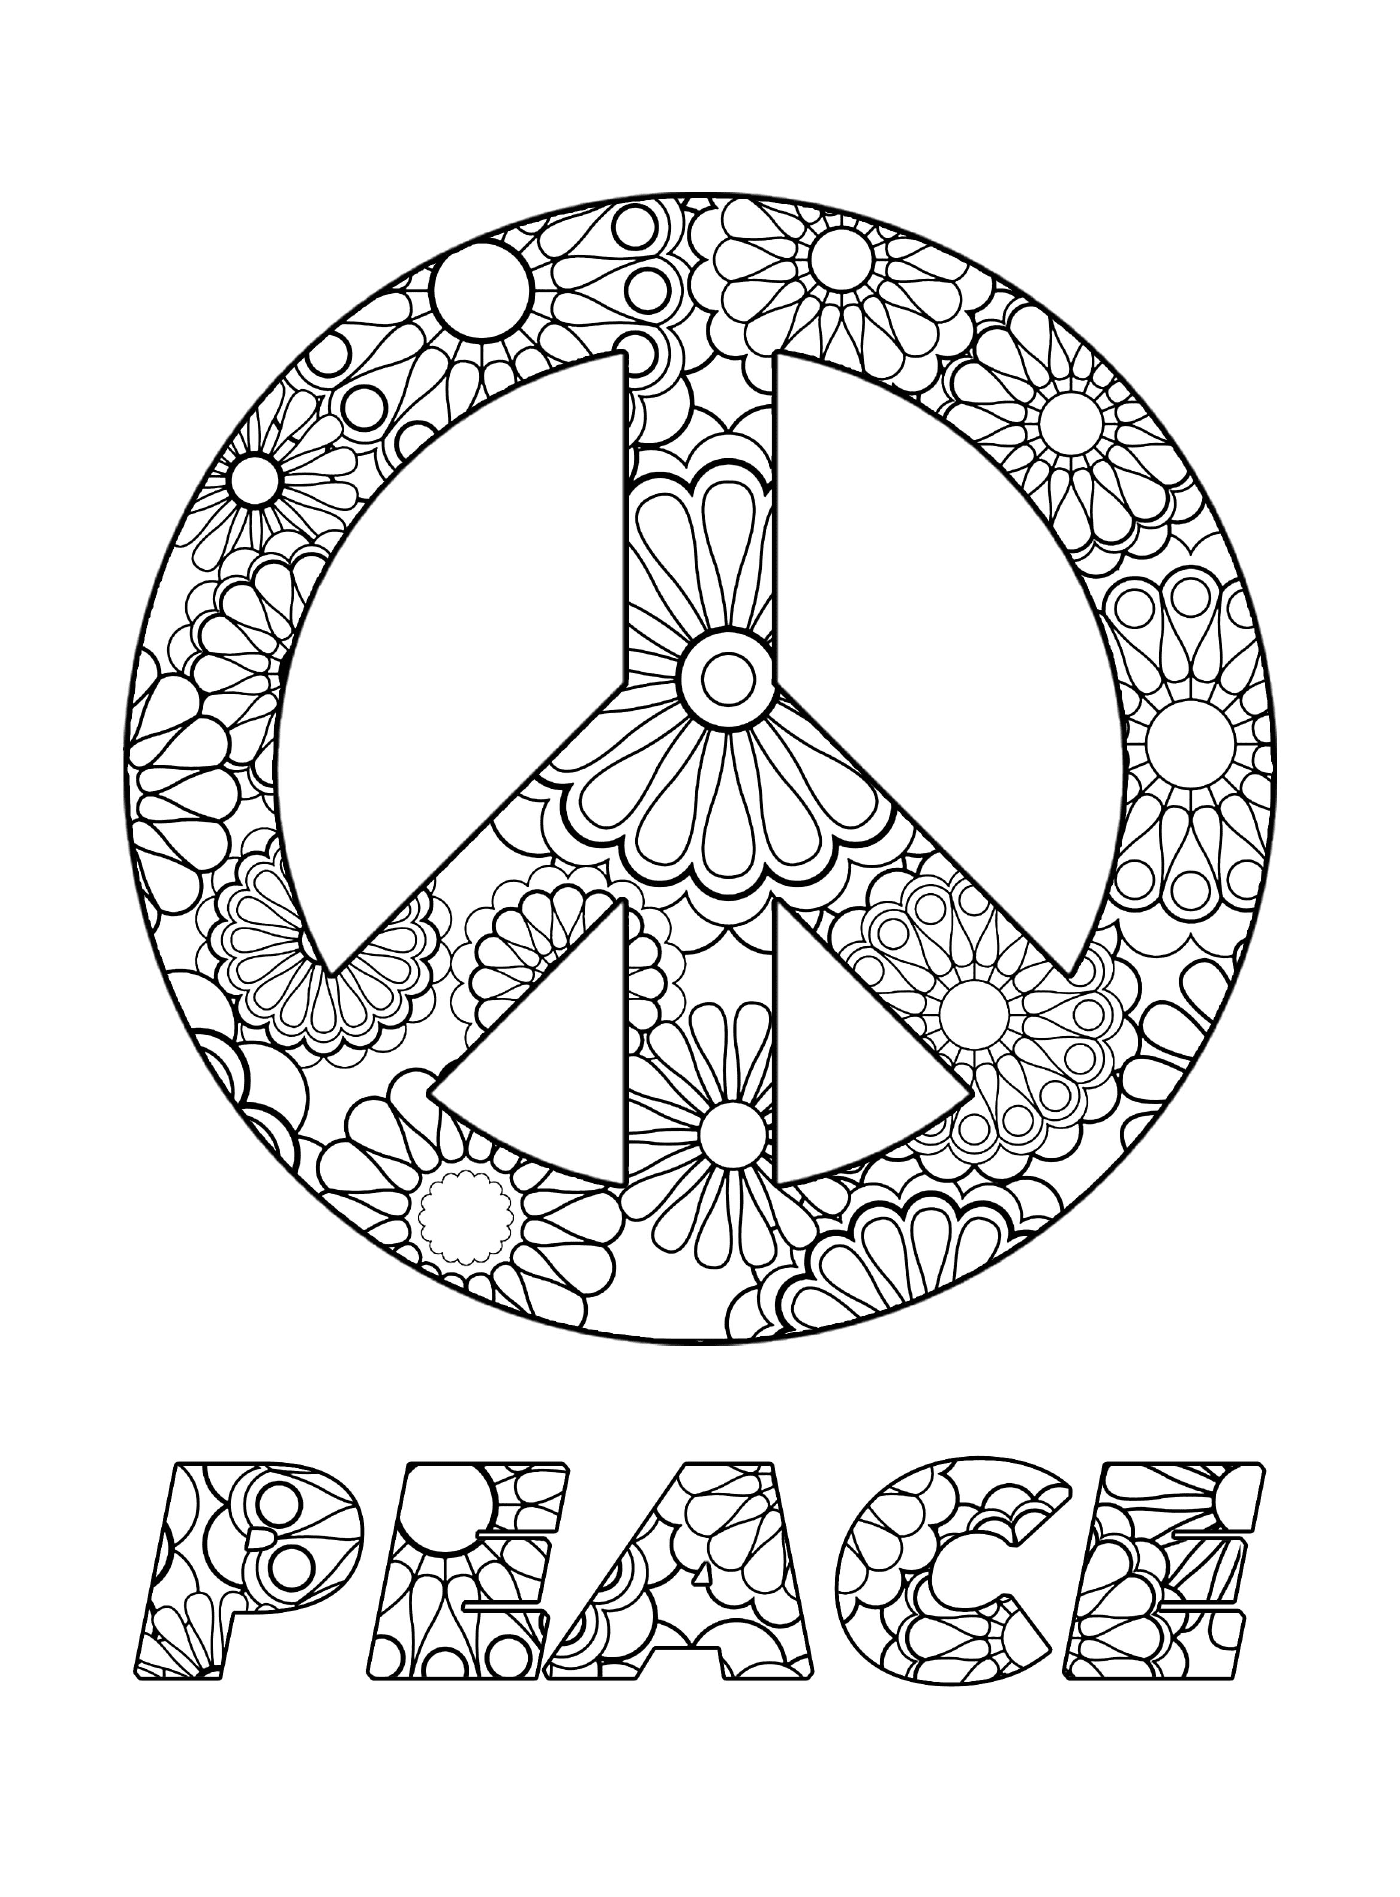  Символ мира с цветами 